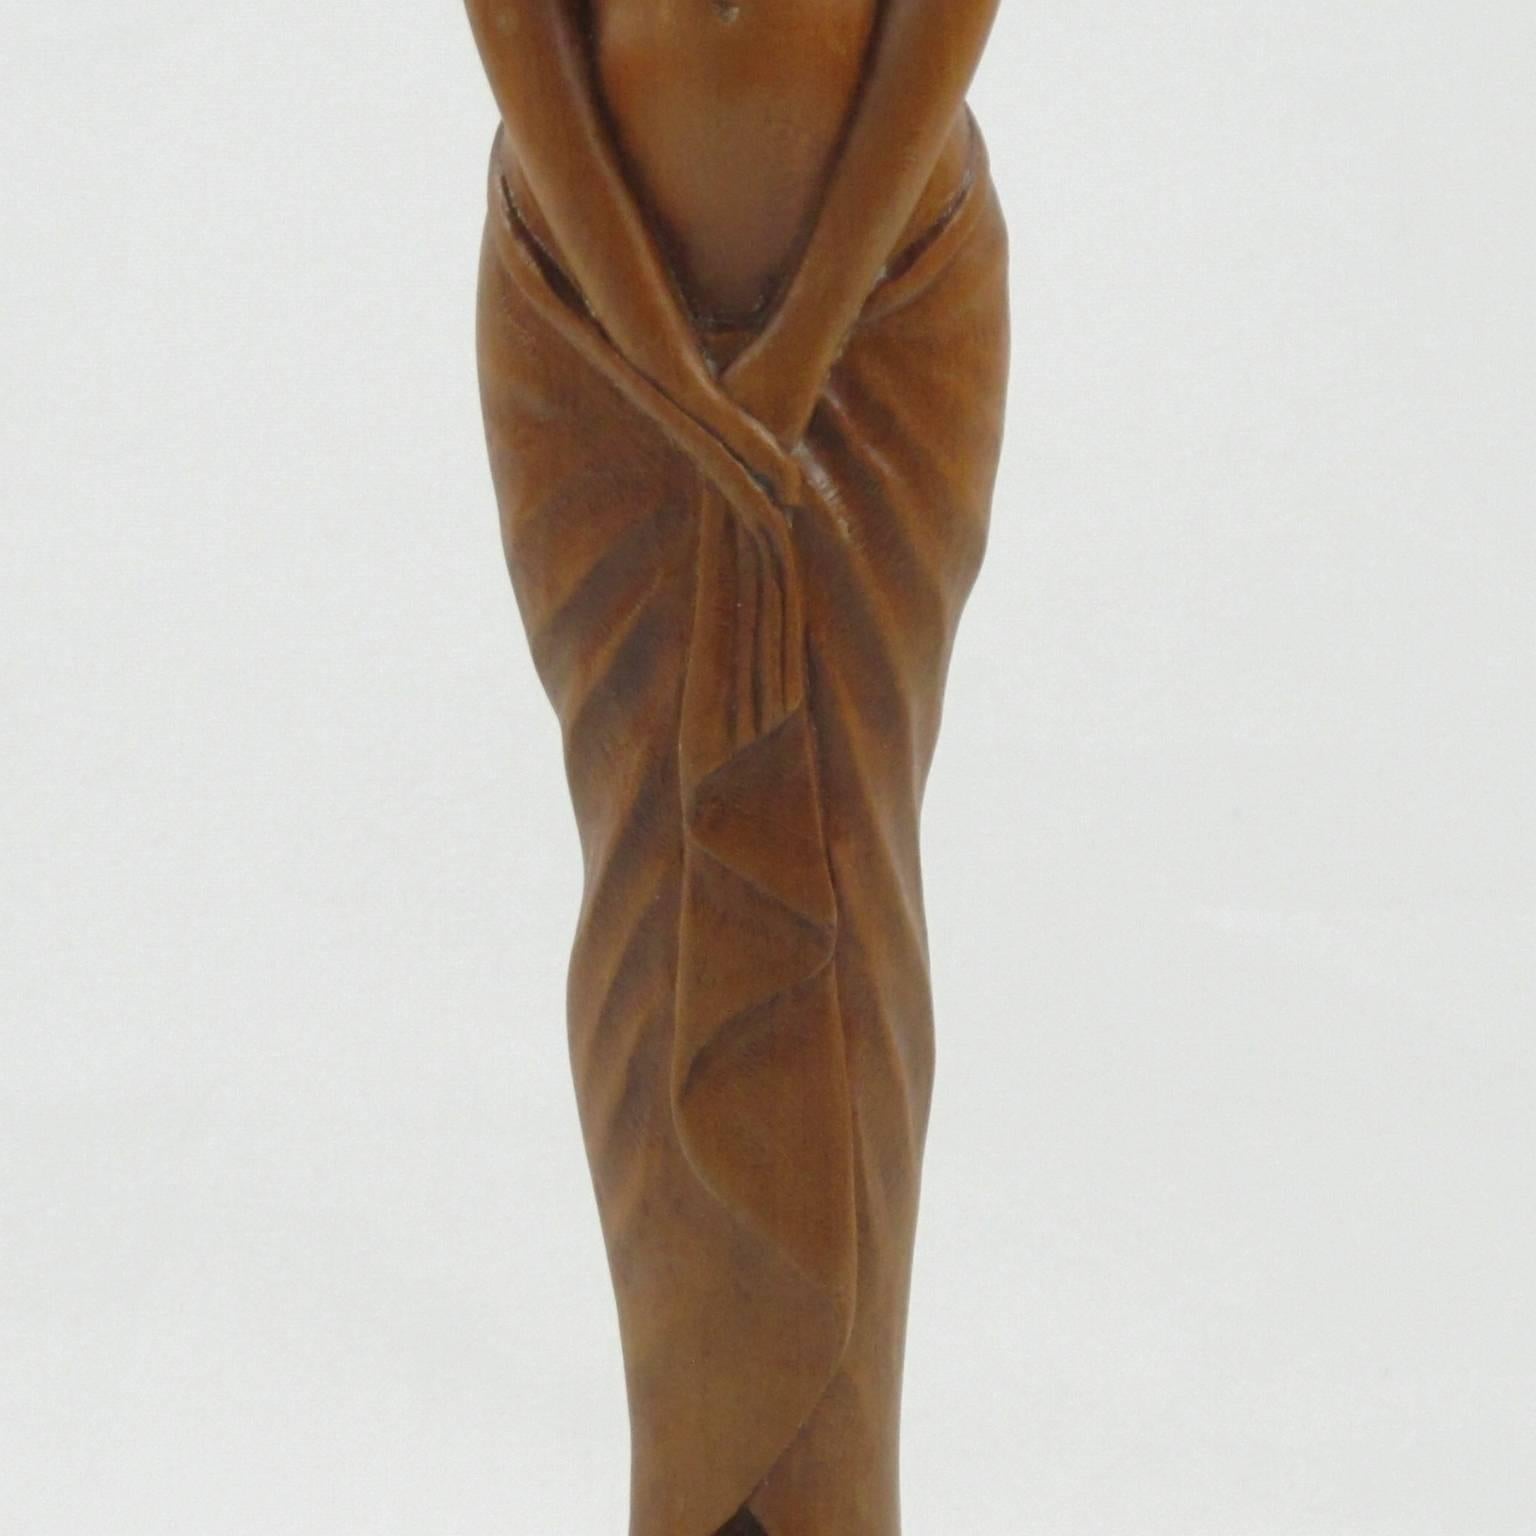 Vintage French Art Deco Wooden Sculpture Statuette by L. Goussot, circa 1930s 2